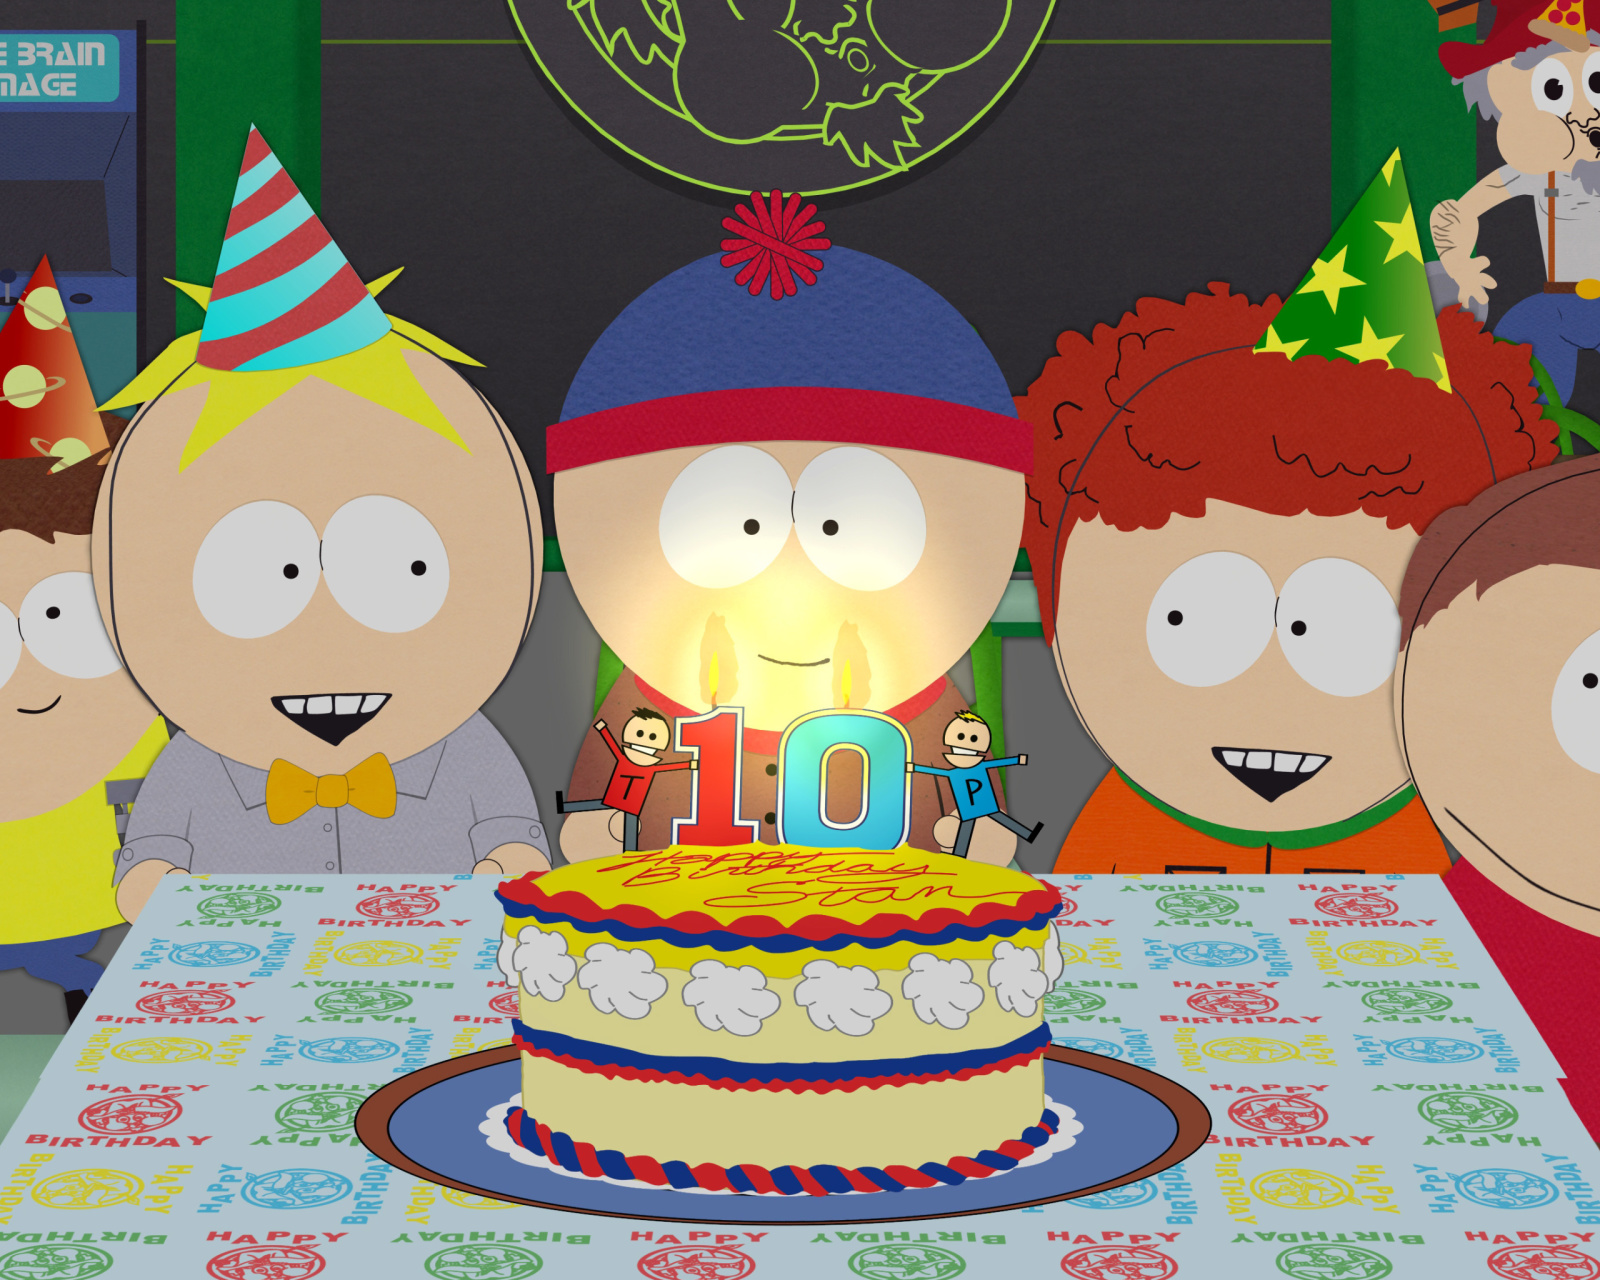 Das South Park Season 15 Stans Party Wallpaper 1600x1280